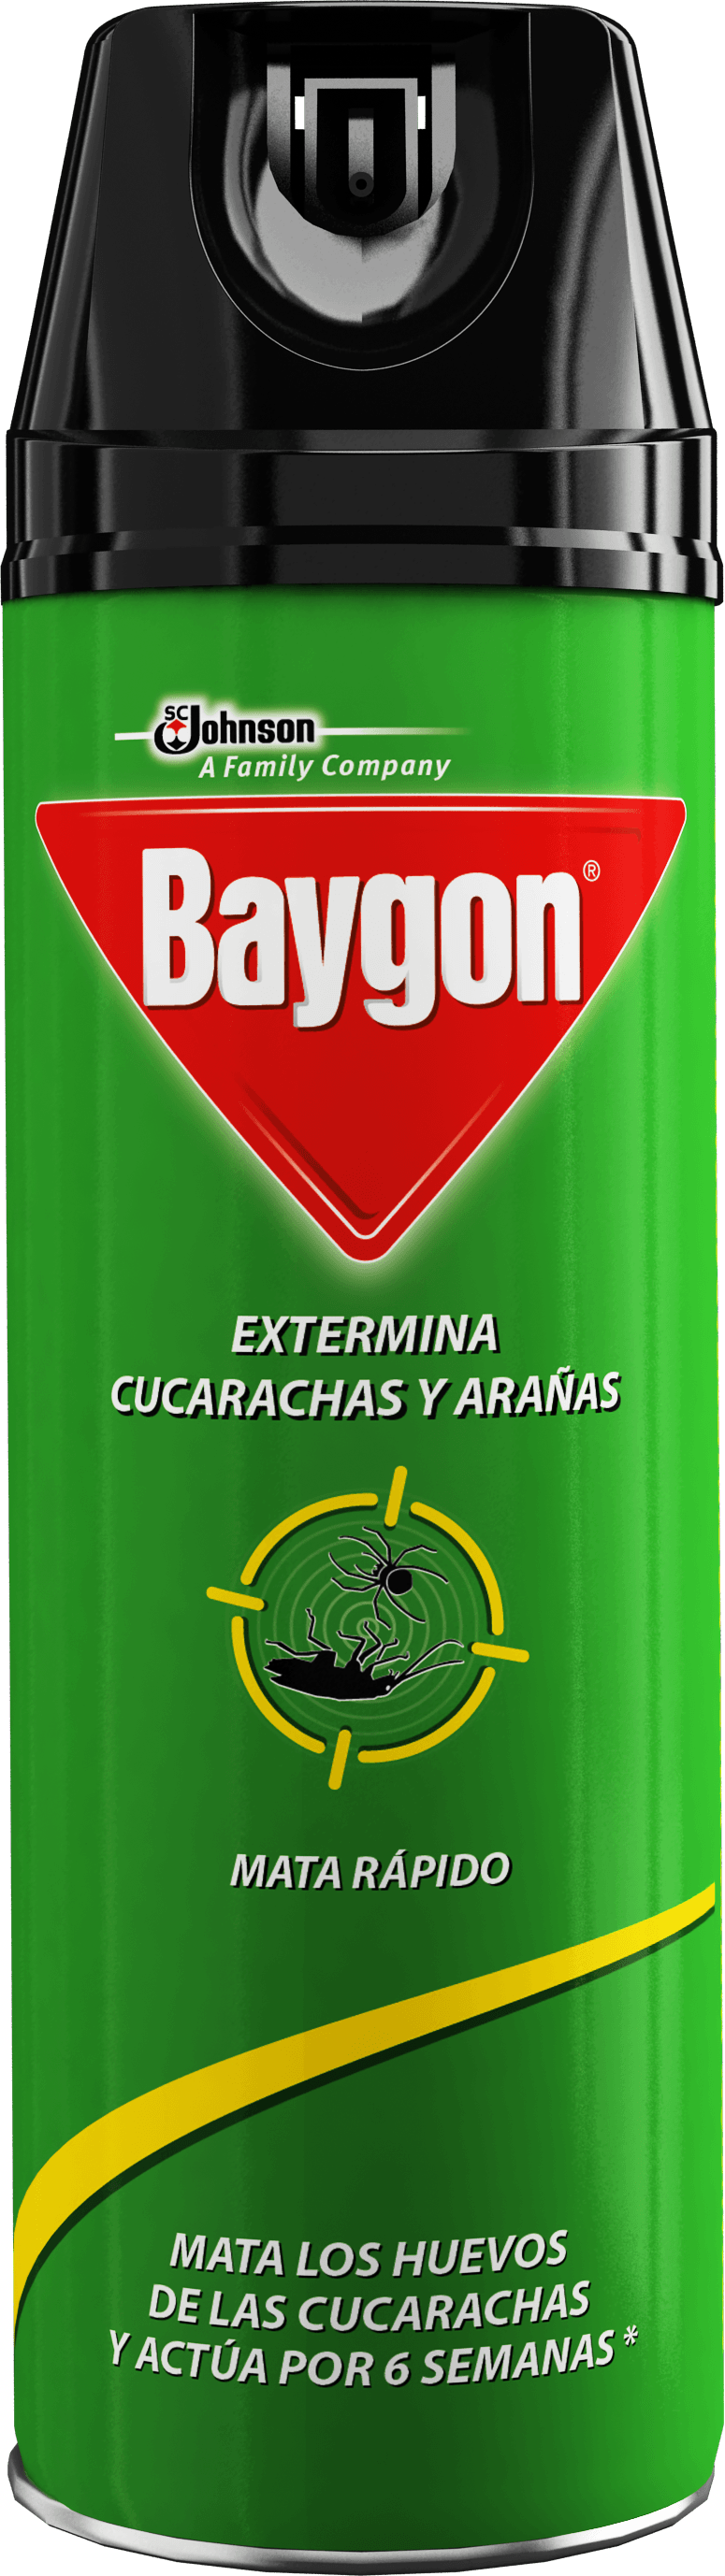 Baygon Logo - Baygon® Extermina Cucarachas y Arañas